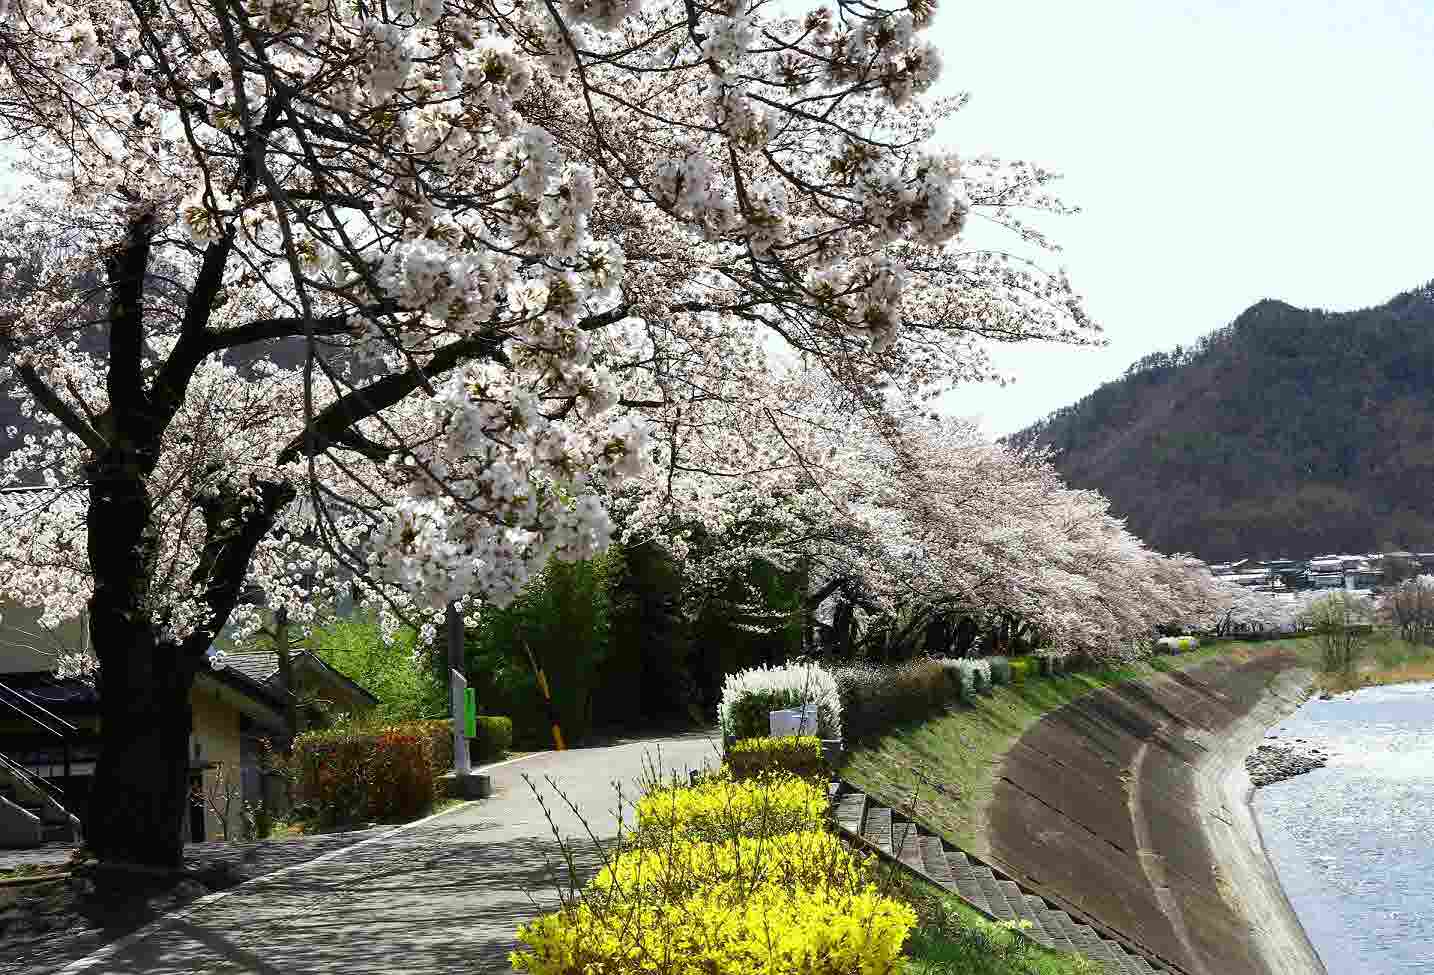 依田川桜堤防の桜